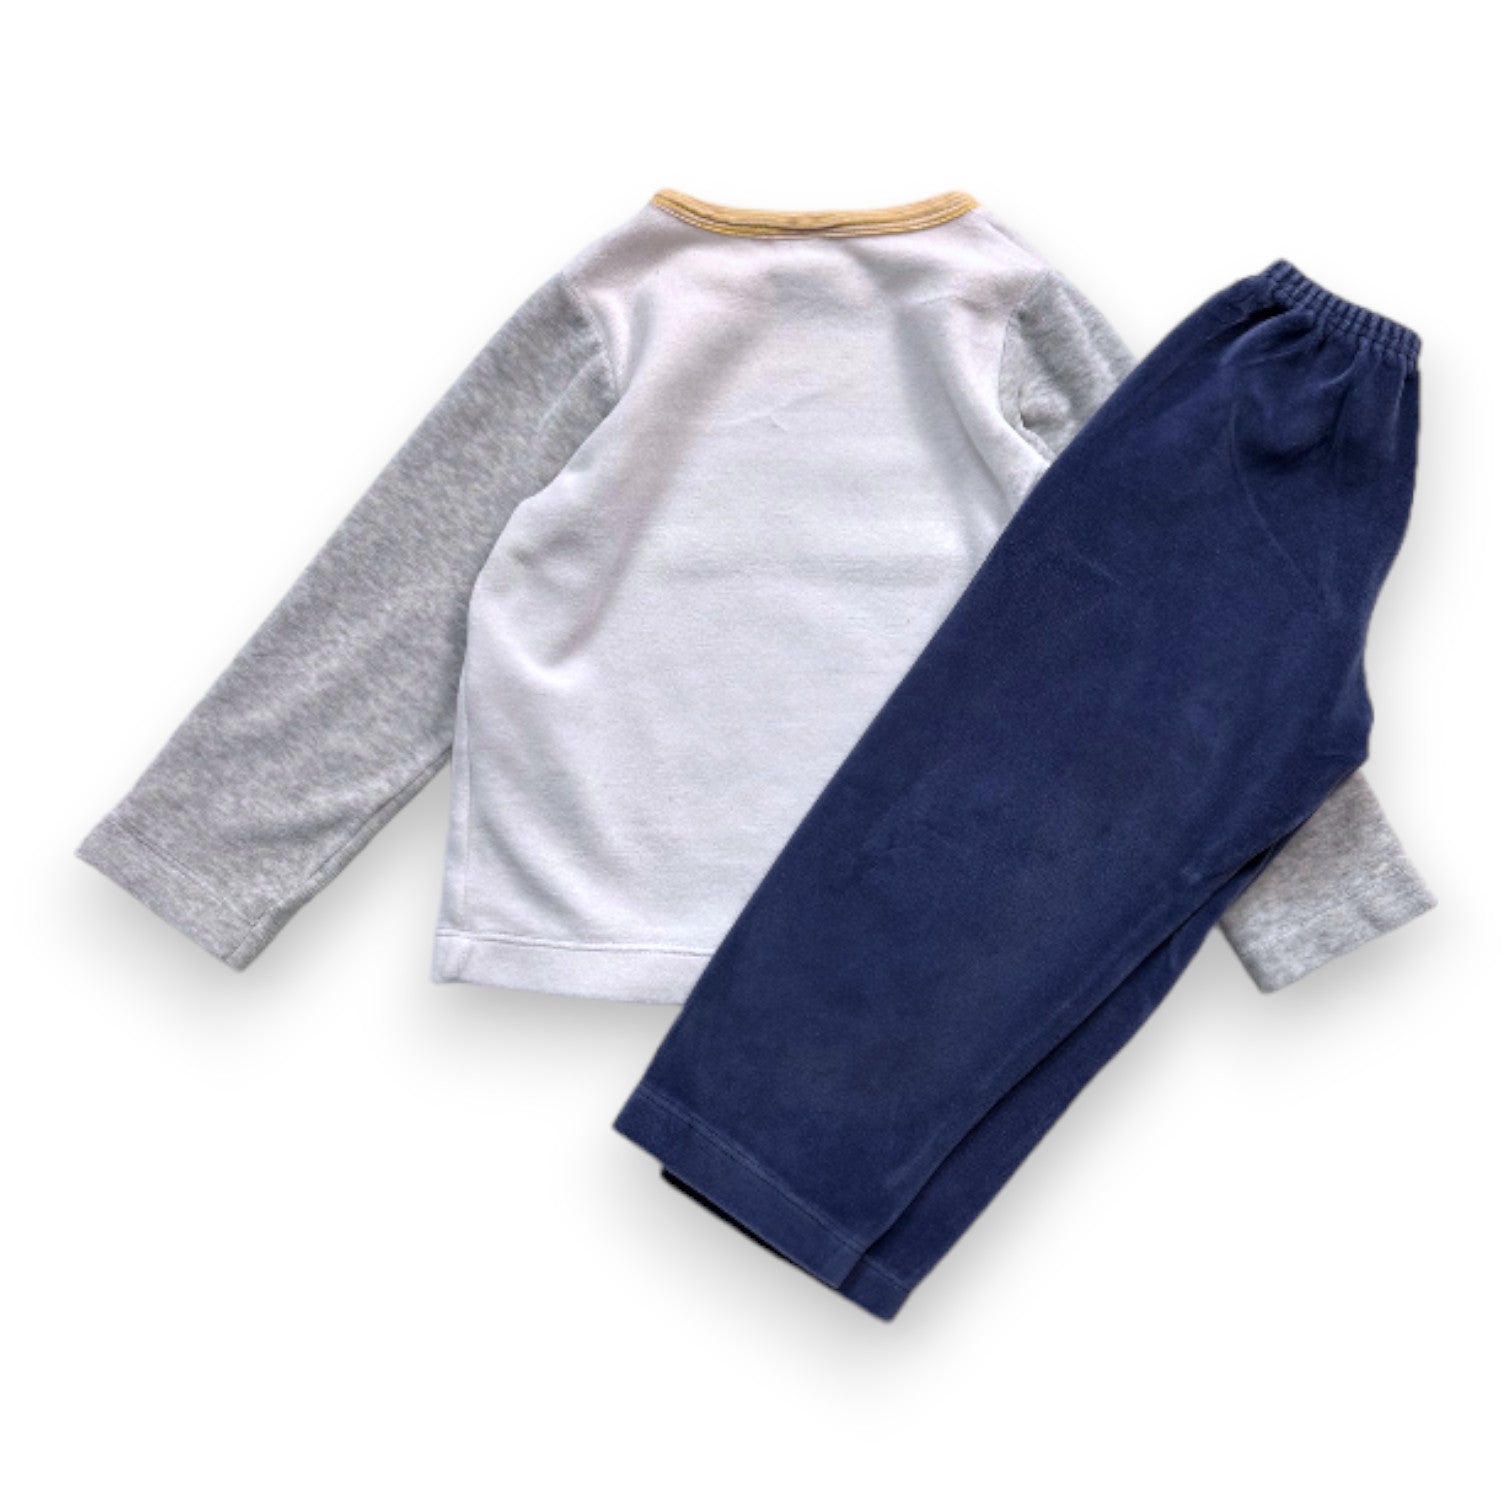 PETIT BATEAU - Pyjama 2 pièces avec pantalon et t-shirt à manches longues - 3 ans